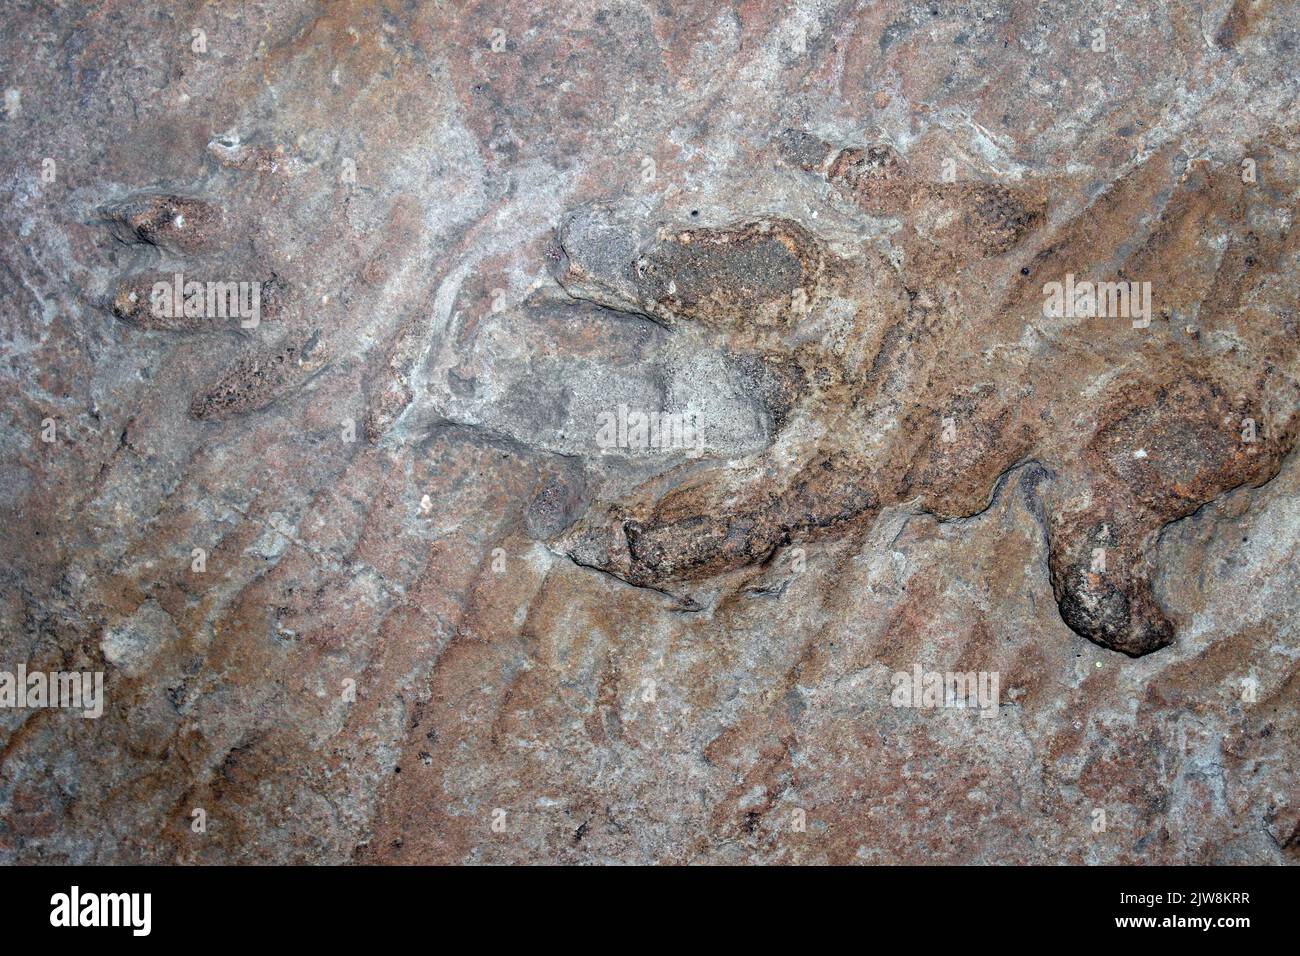 Empreintes de pas de Chirotherium stortonense en grès de Storeton Quarry, Cheshire, Angleterre, Royaume-Uni Banque D'Images